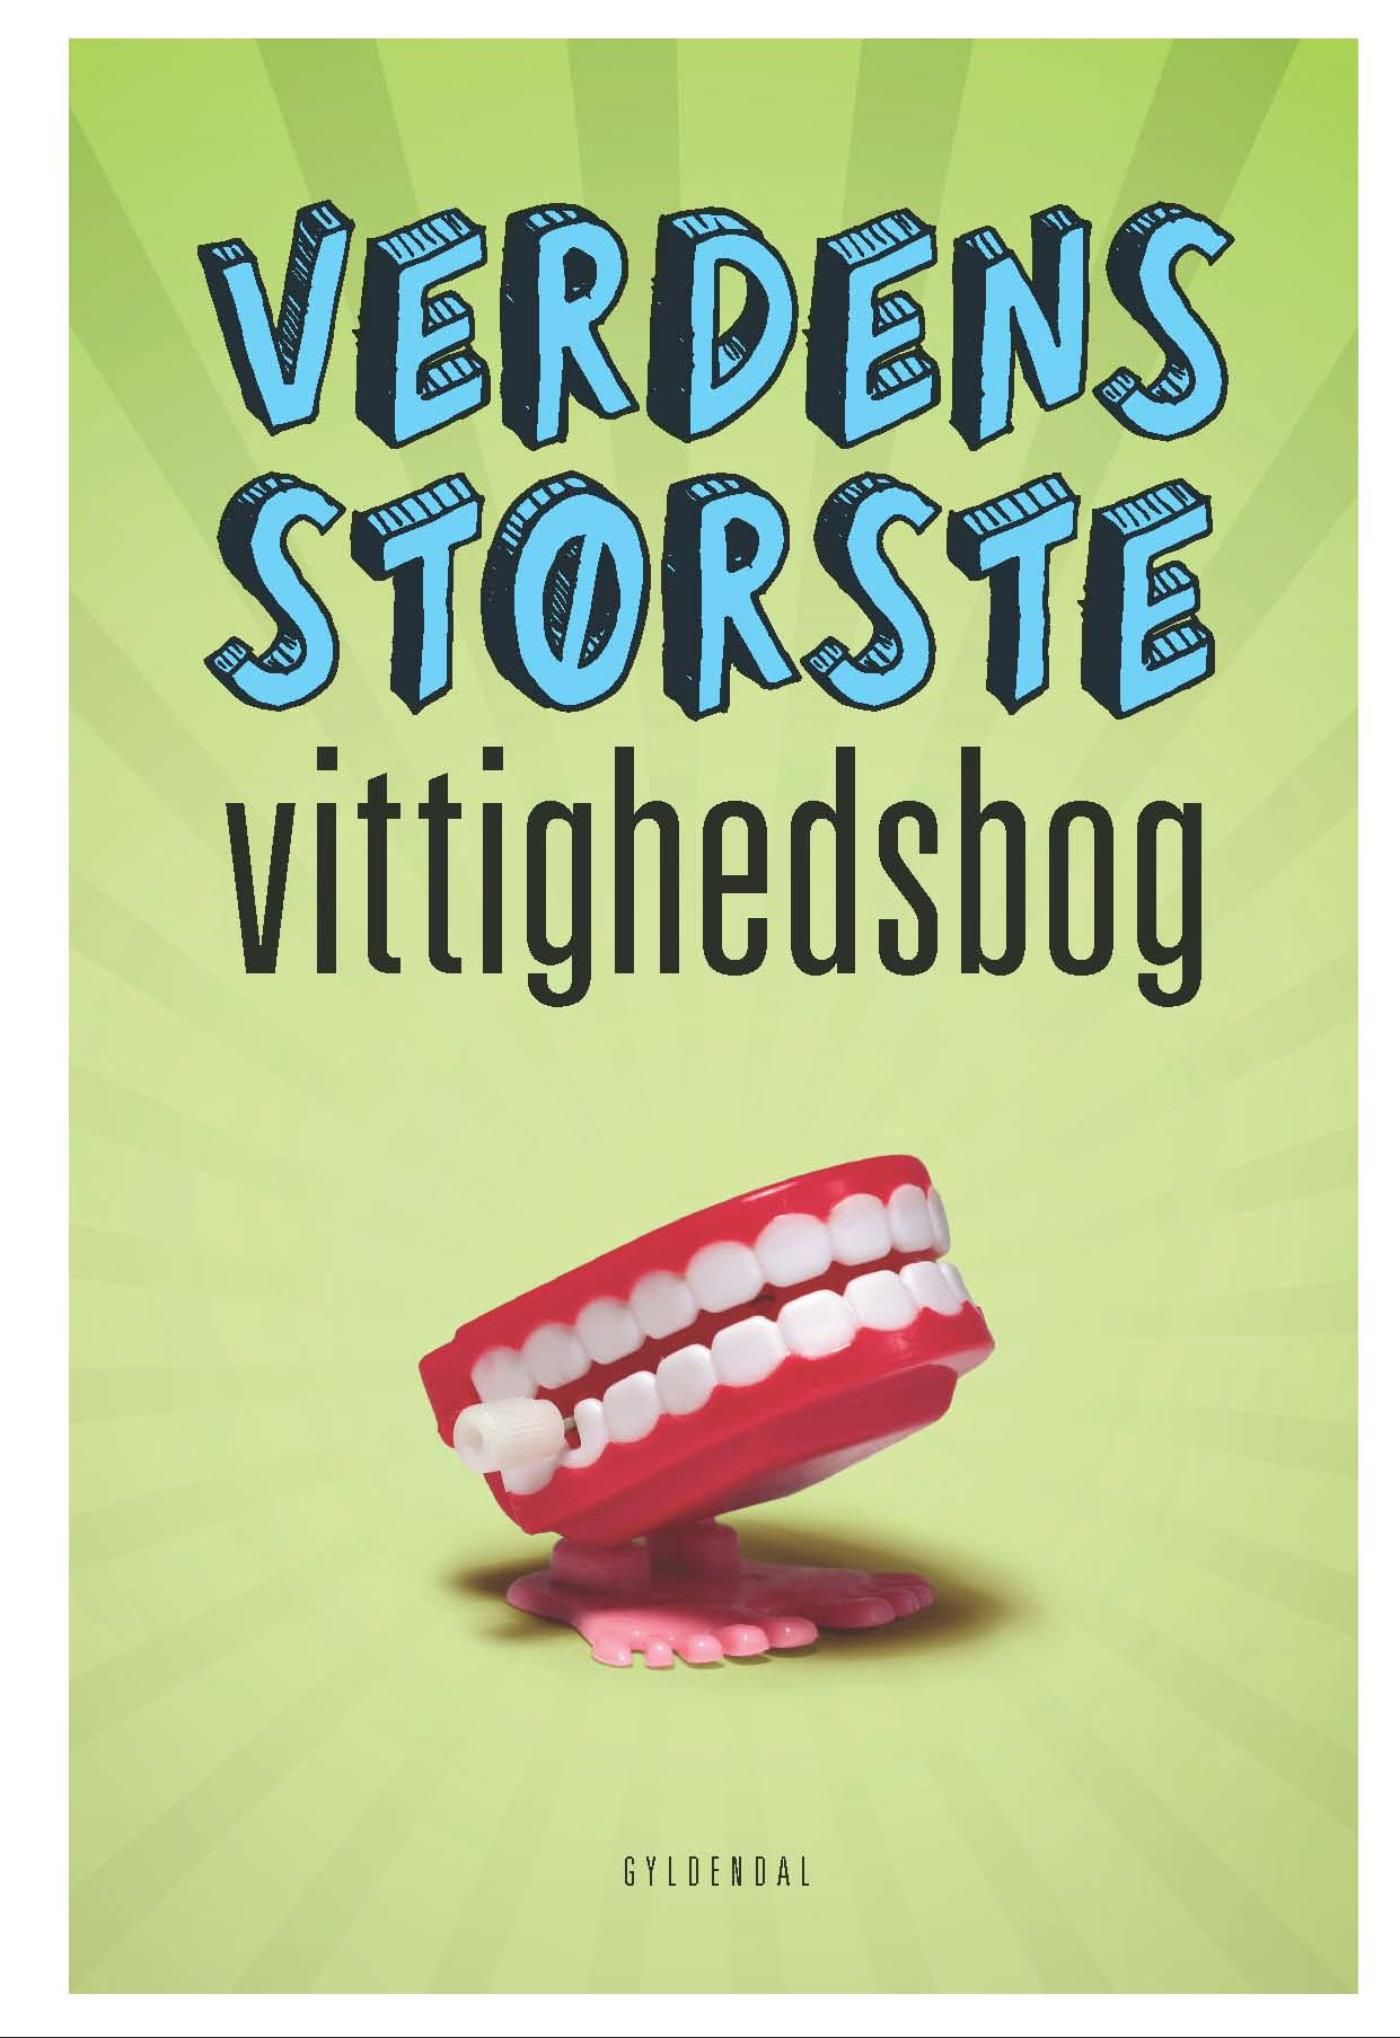 Verdens største vittighedsbog, e-bog af Sten Wijkman Kjærsgaard